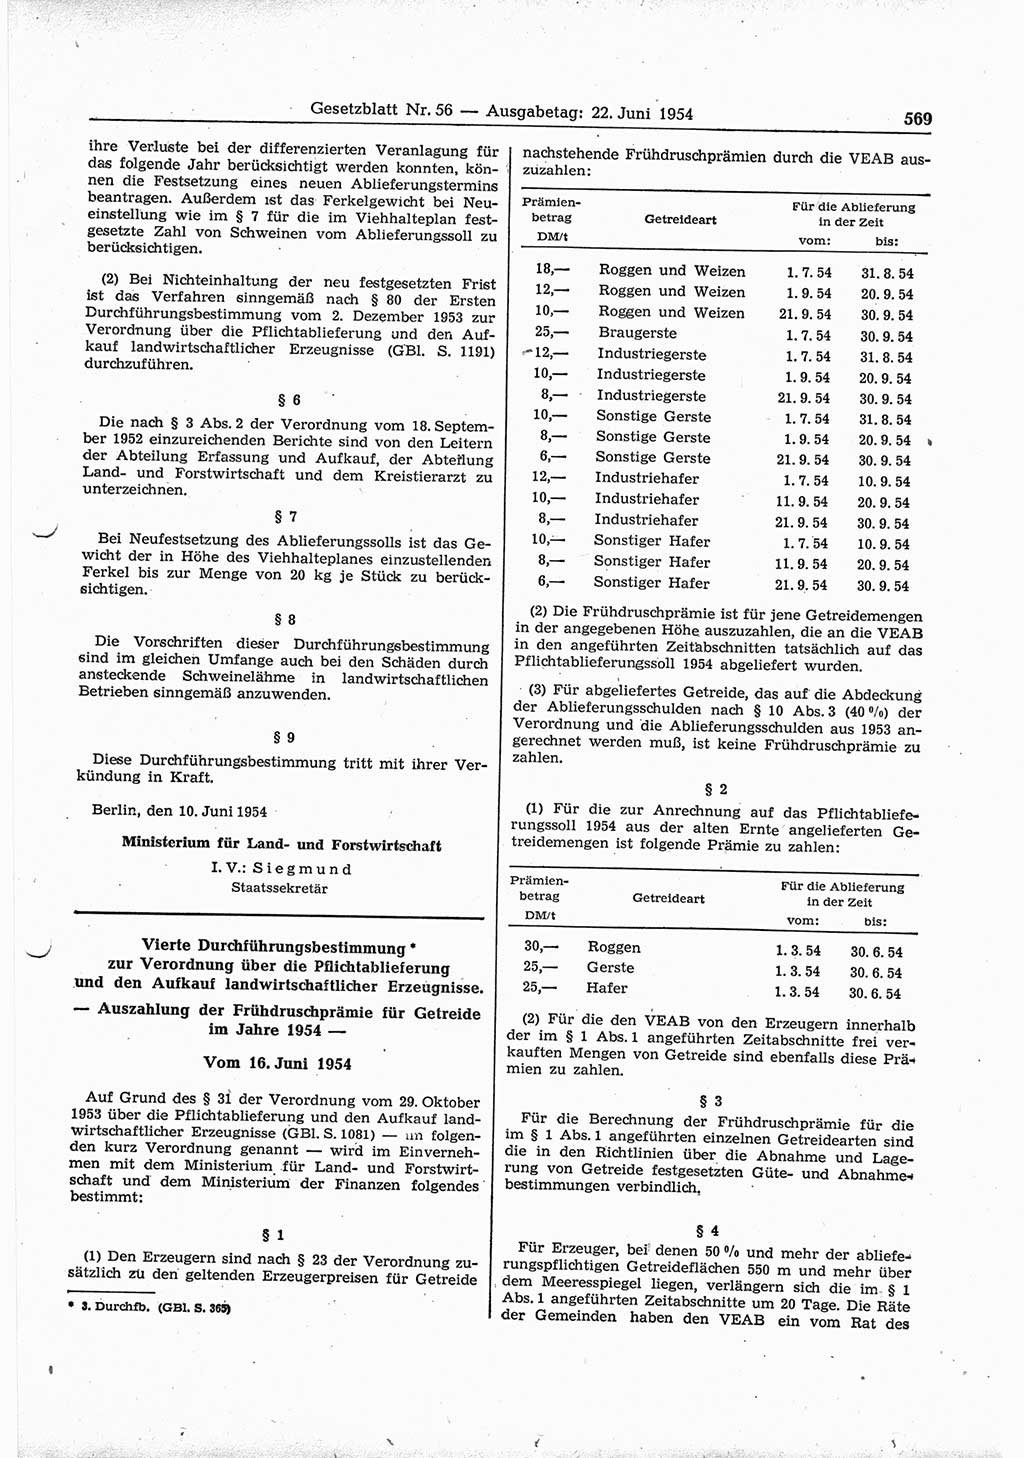 Gesetzblatt (GBl.) der Deutschen Demokratischen Republik (DDR) 1954, Seite 569 (GBl. DDR 1954, S. 569)